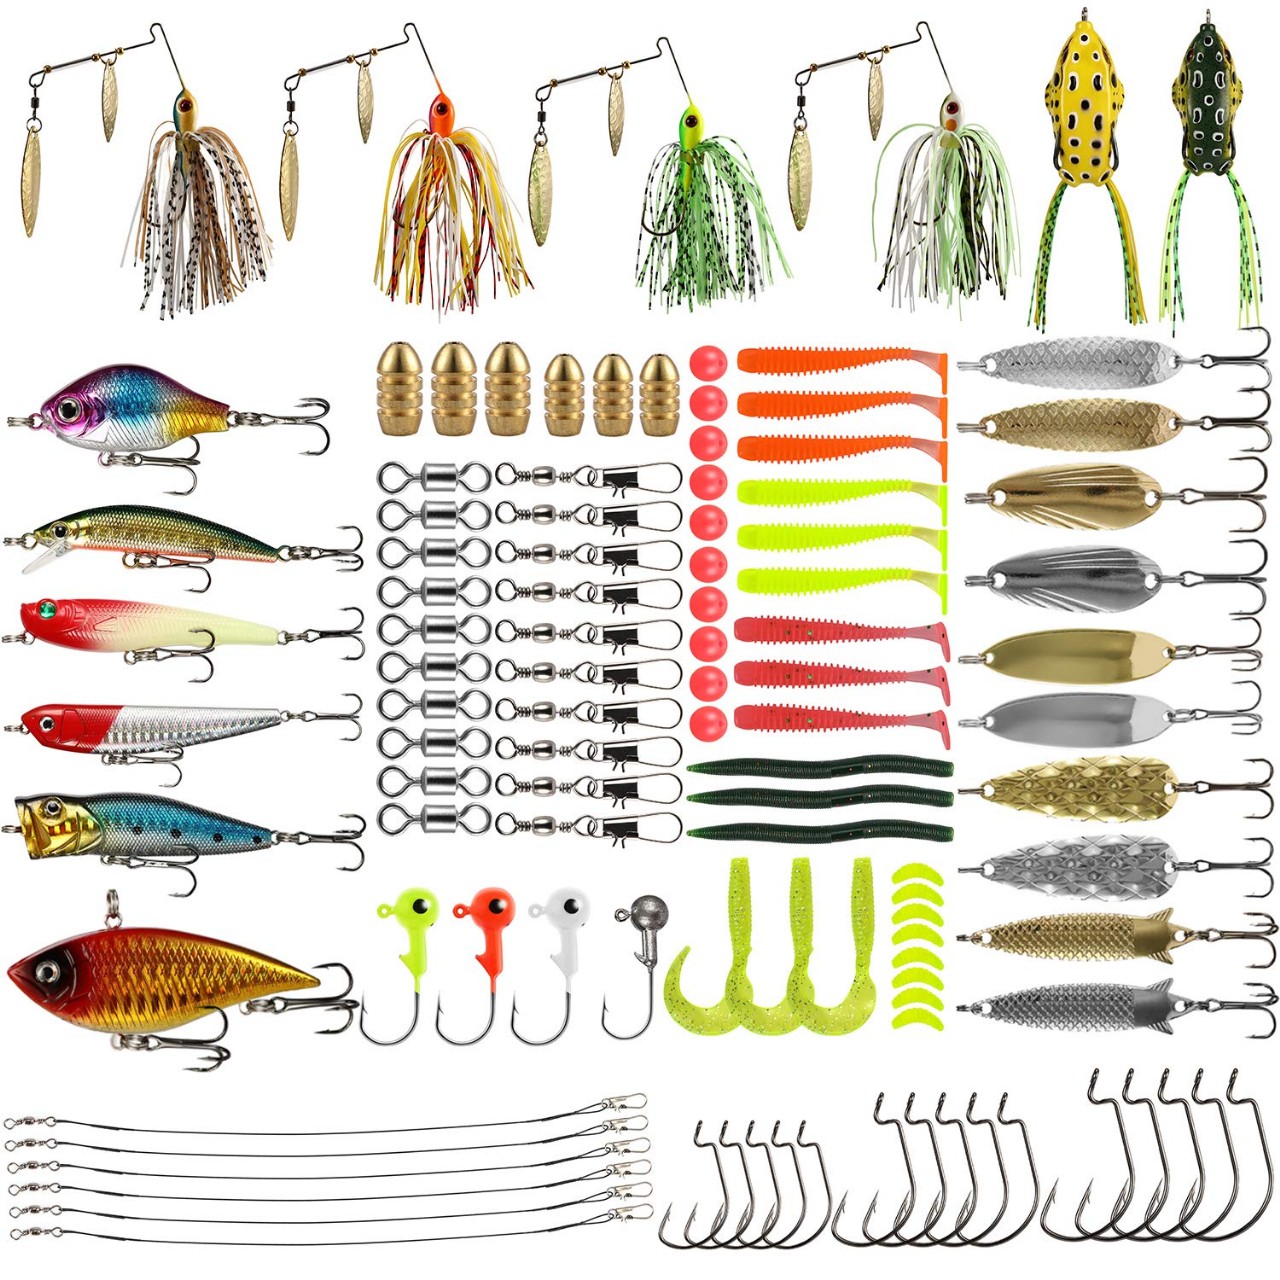 Magreel Fishing Lures Kit 110pcs/120pcs/262pcs Fish Baits Kit Set with Tackle Box Including Crankbai